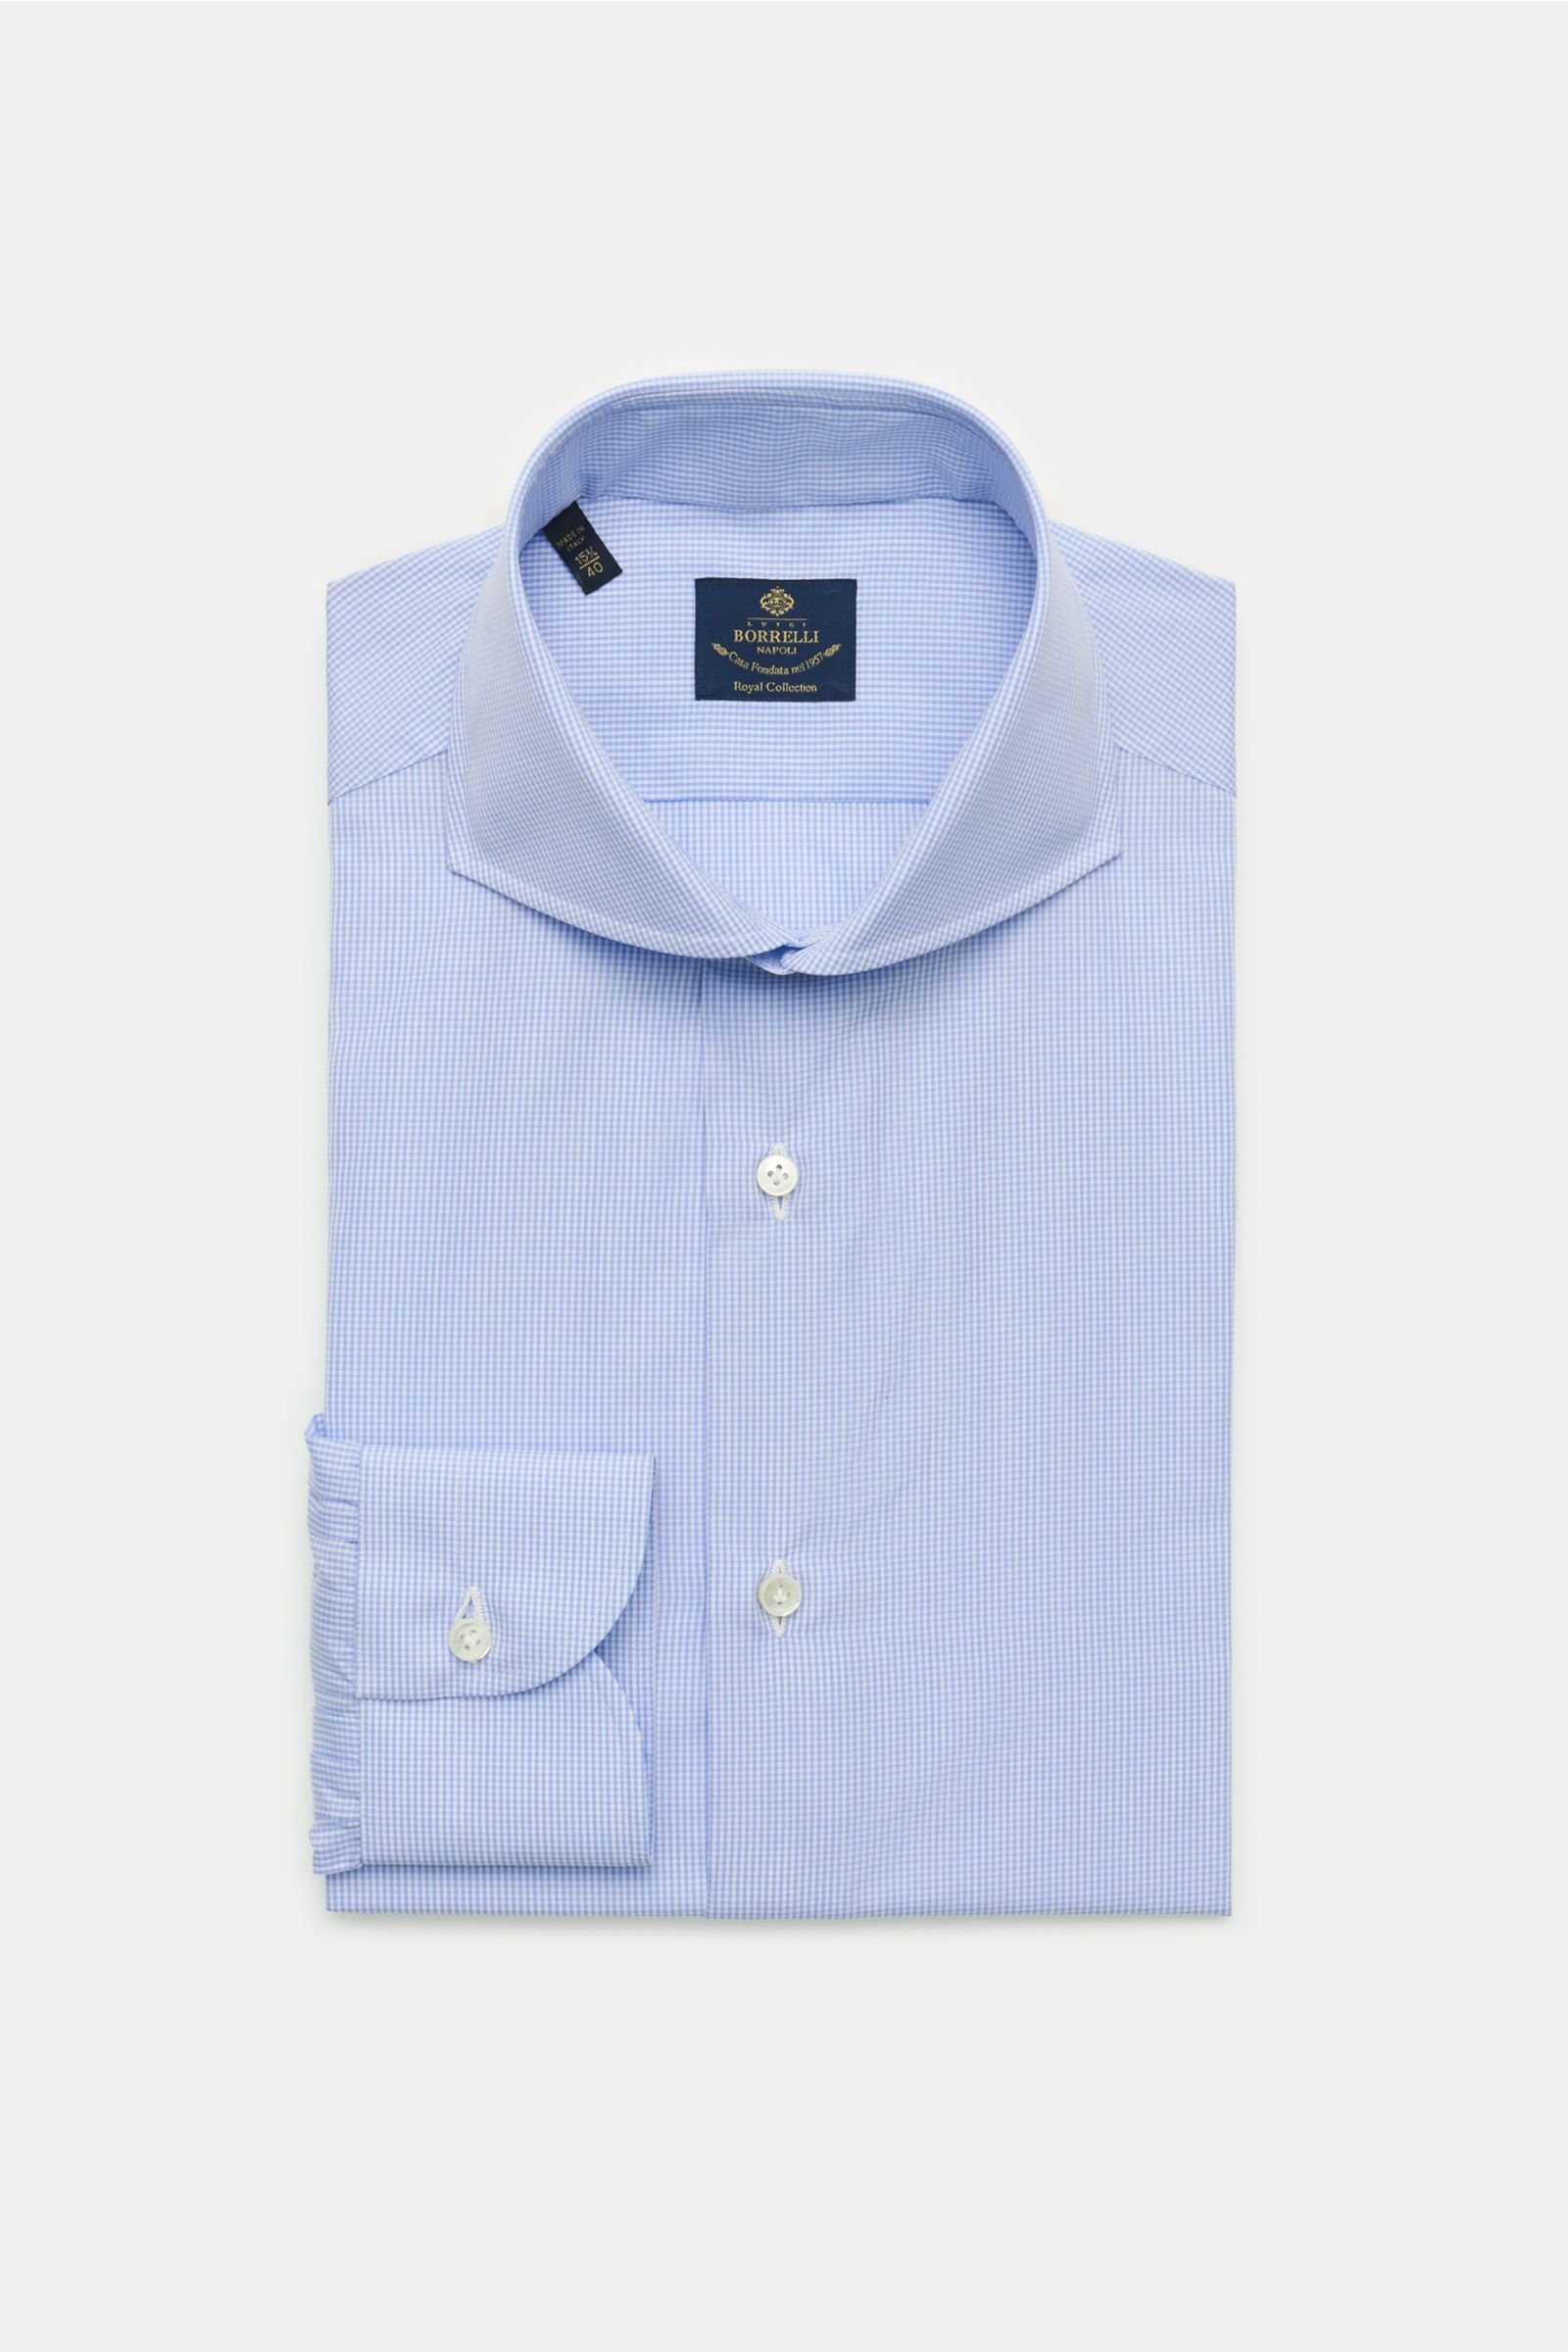 Business shirt 'Sandro' shark collar light blue/white checked